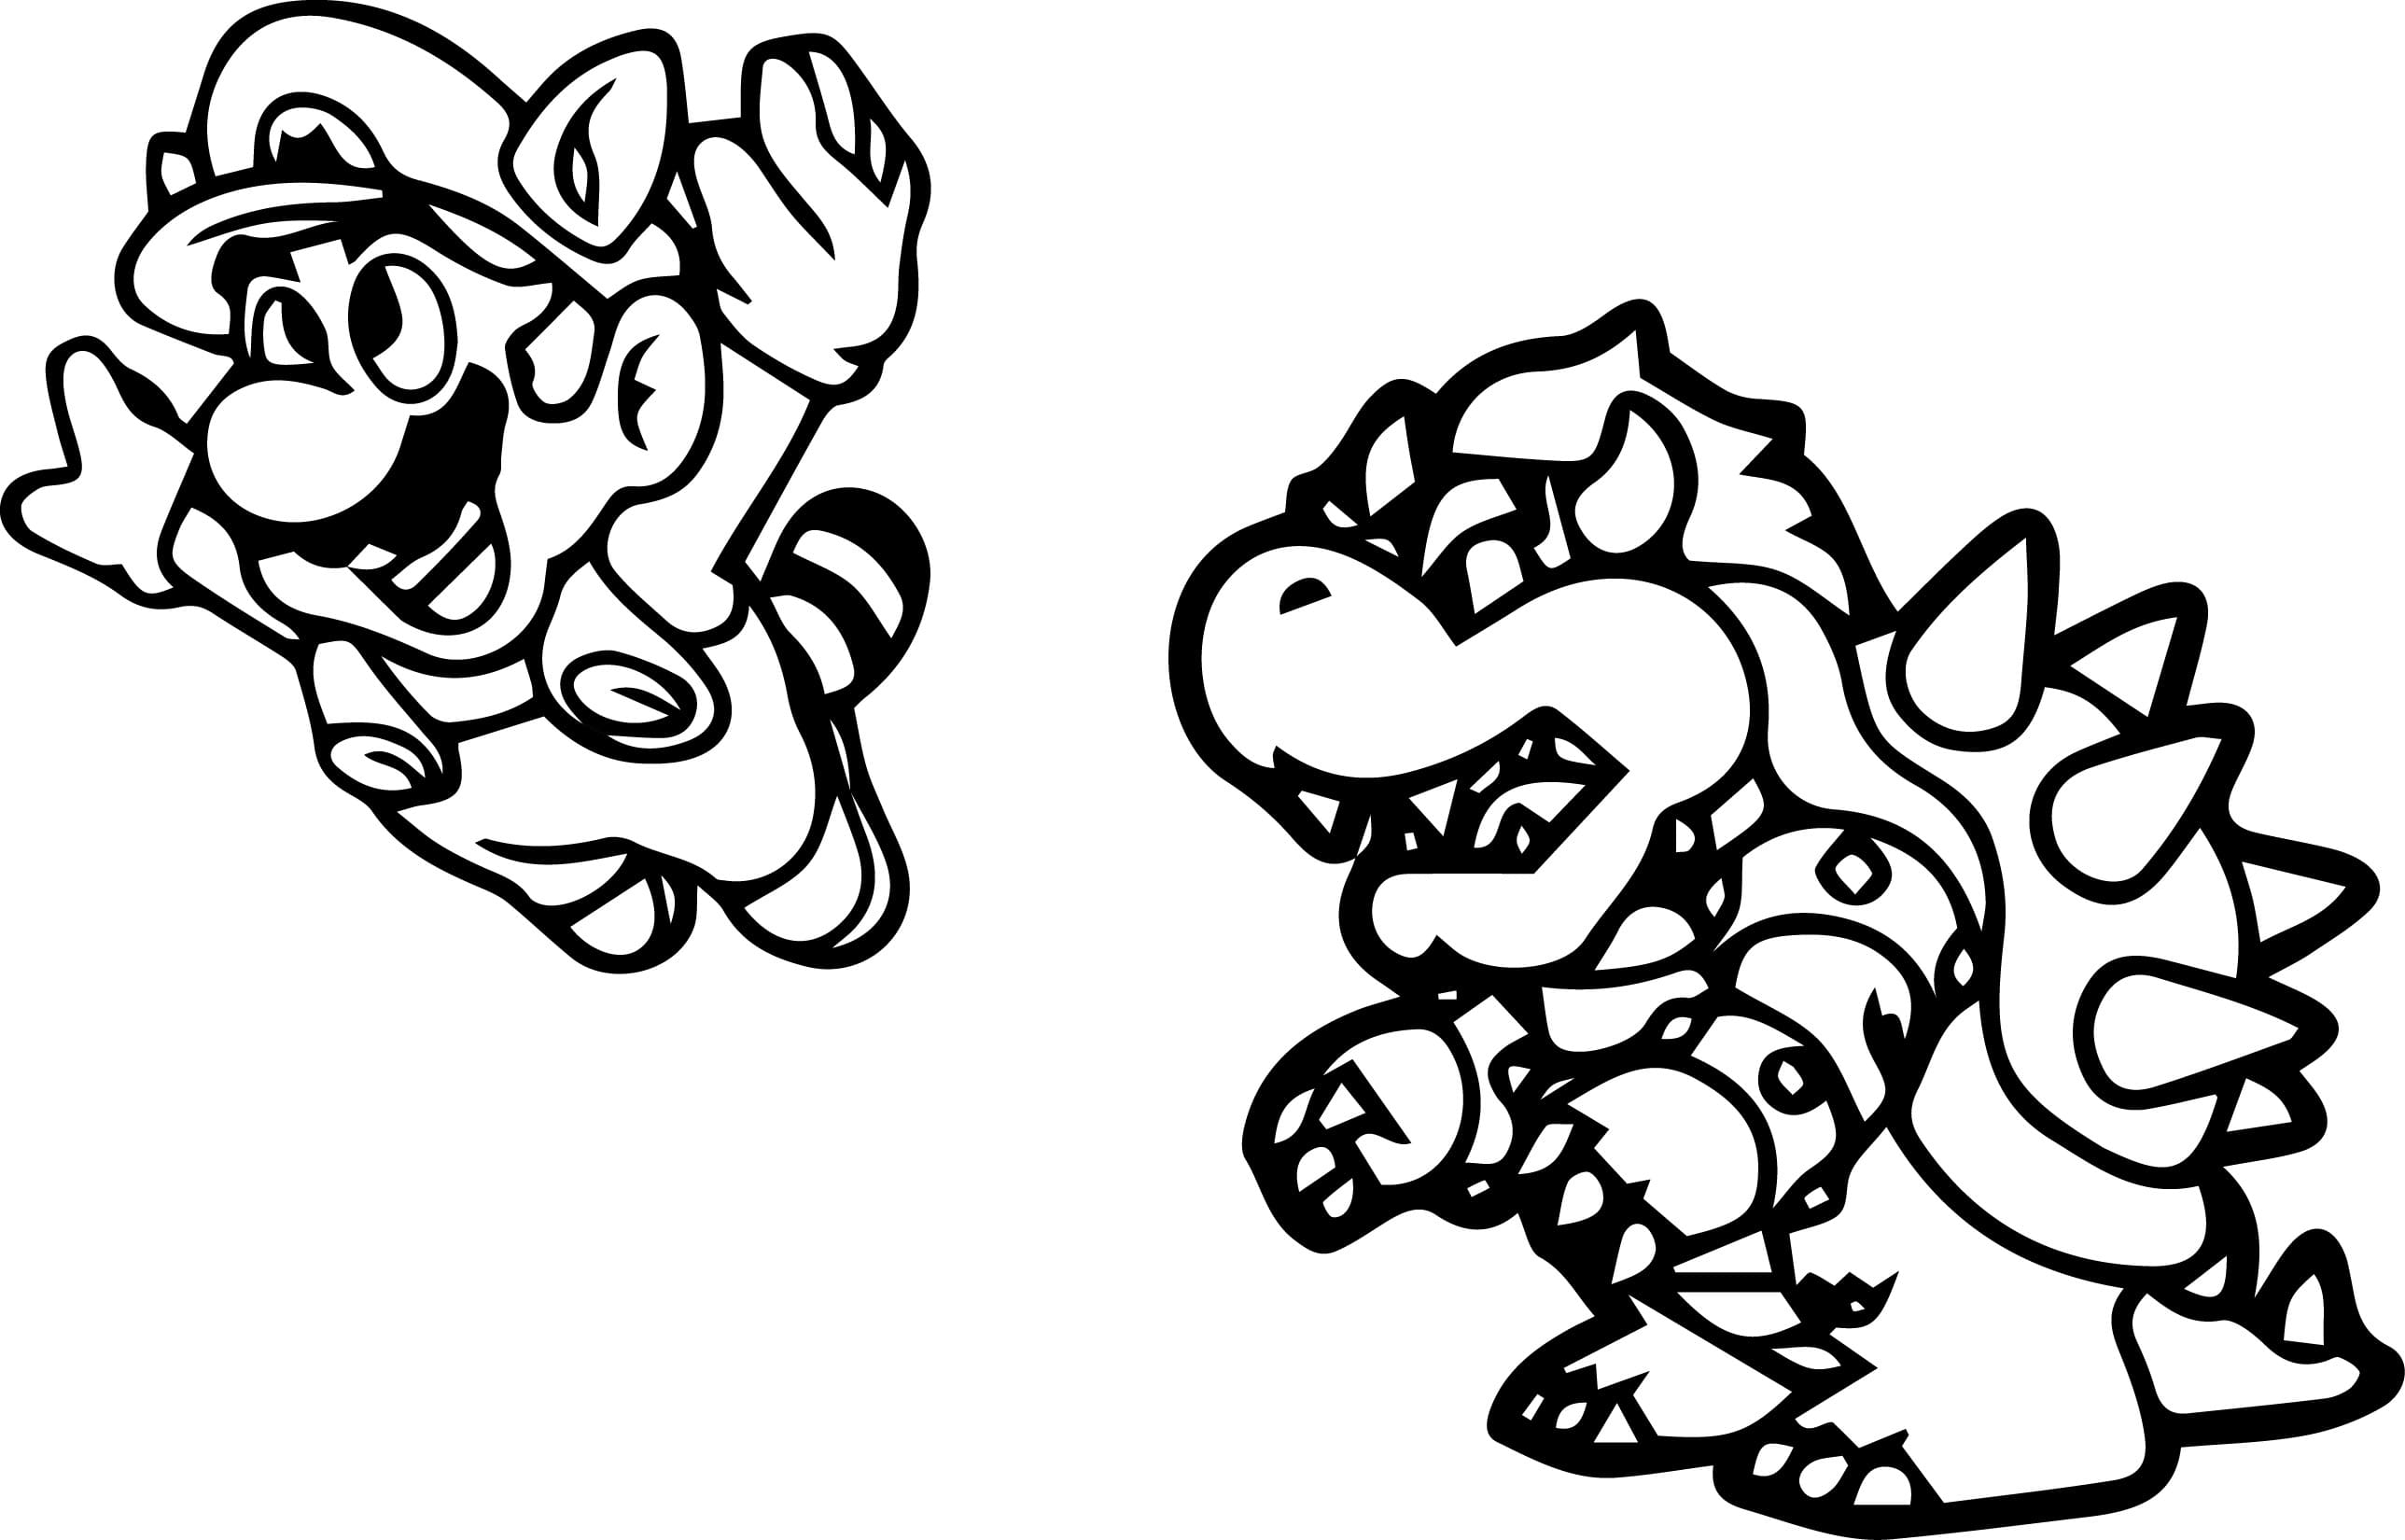 Super Mario Bros Coloring Pages